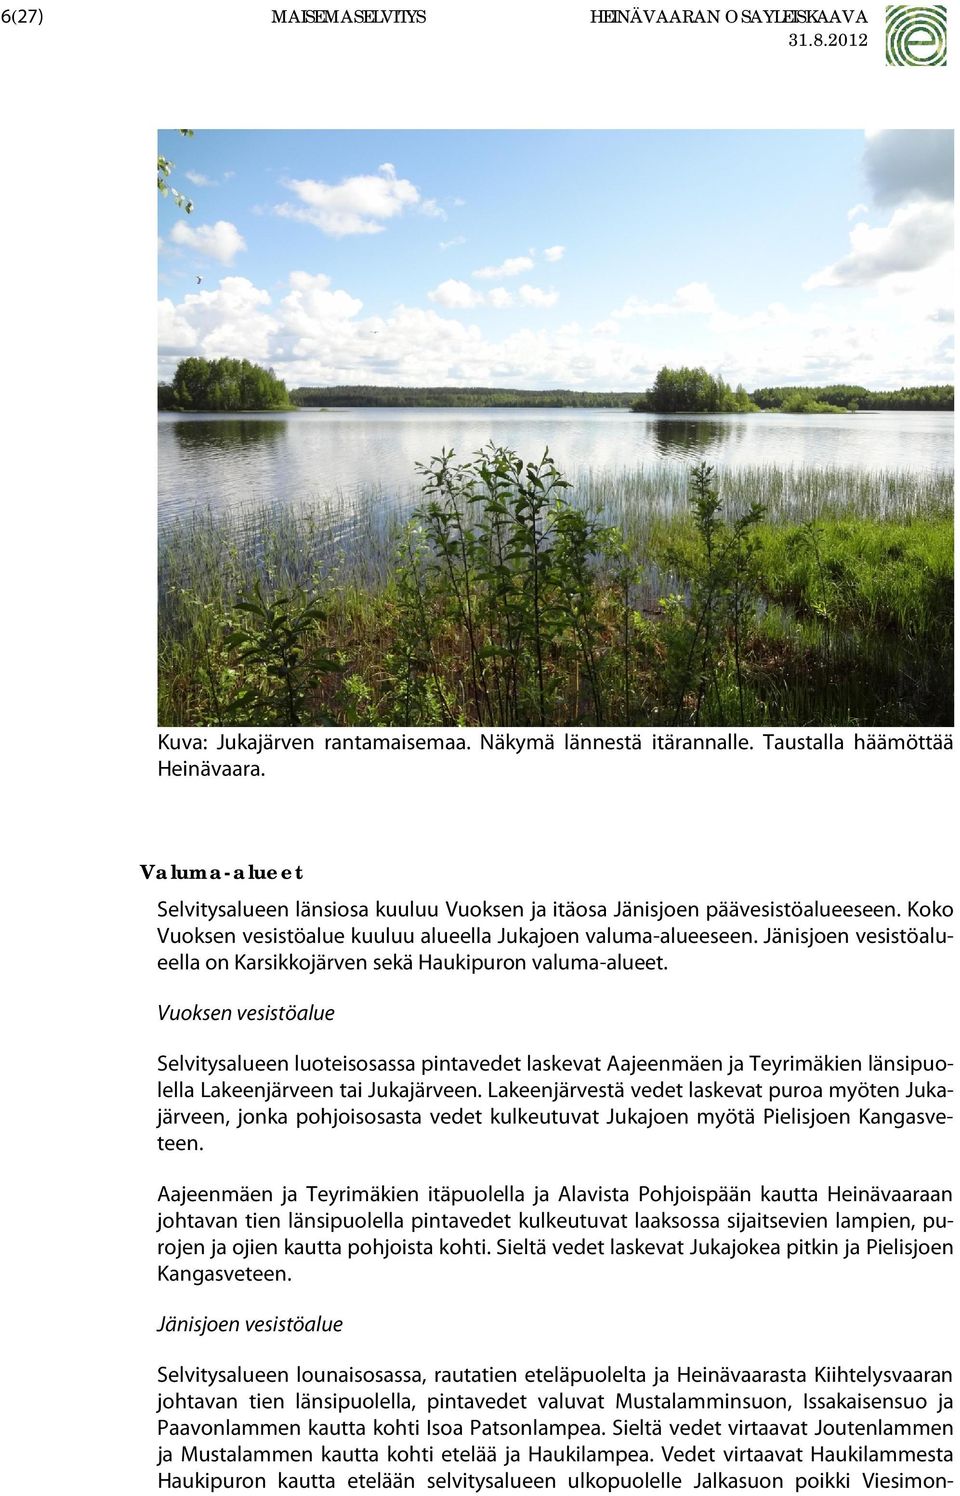 Jänisjoen vesistöalueella on Karsikkojärven sekä Haukipuron valuma-alueet.